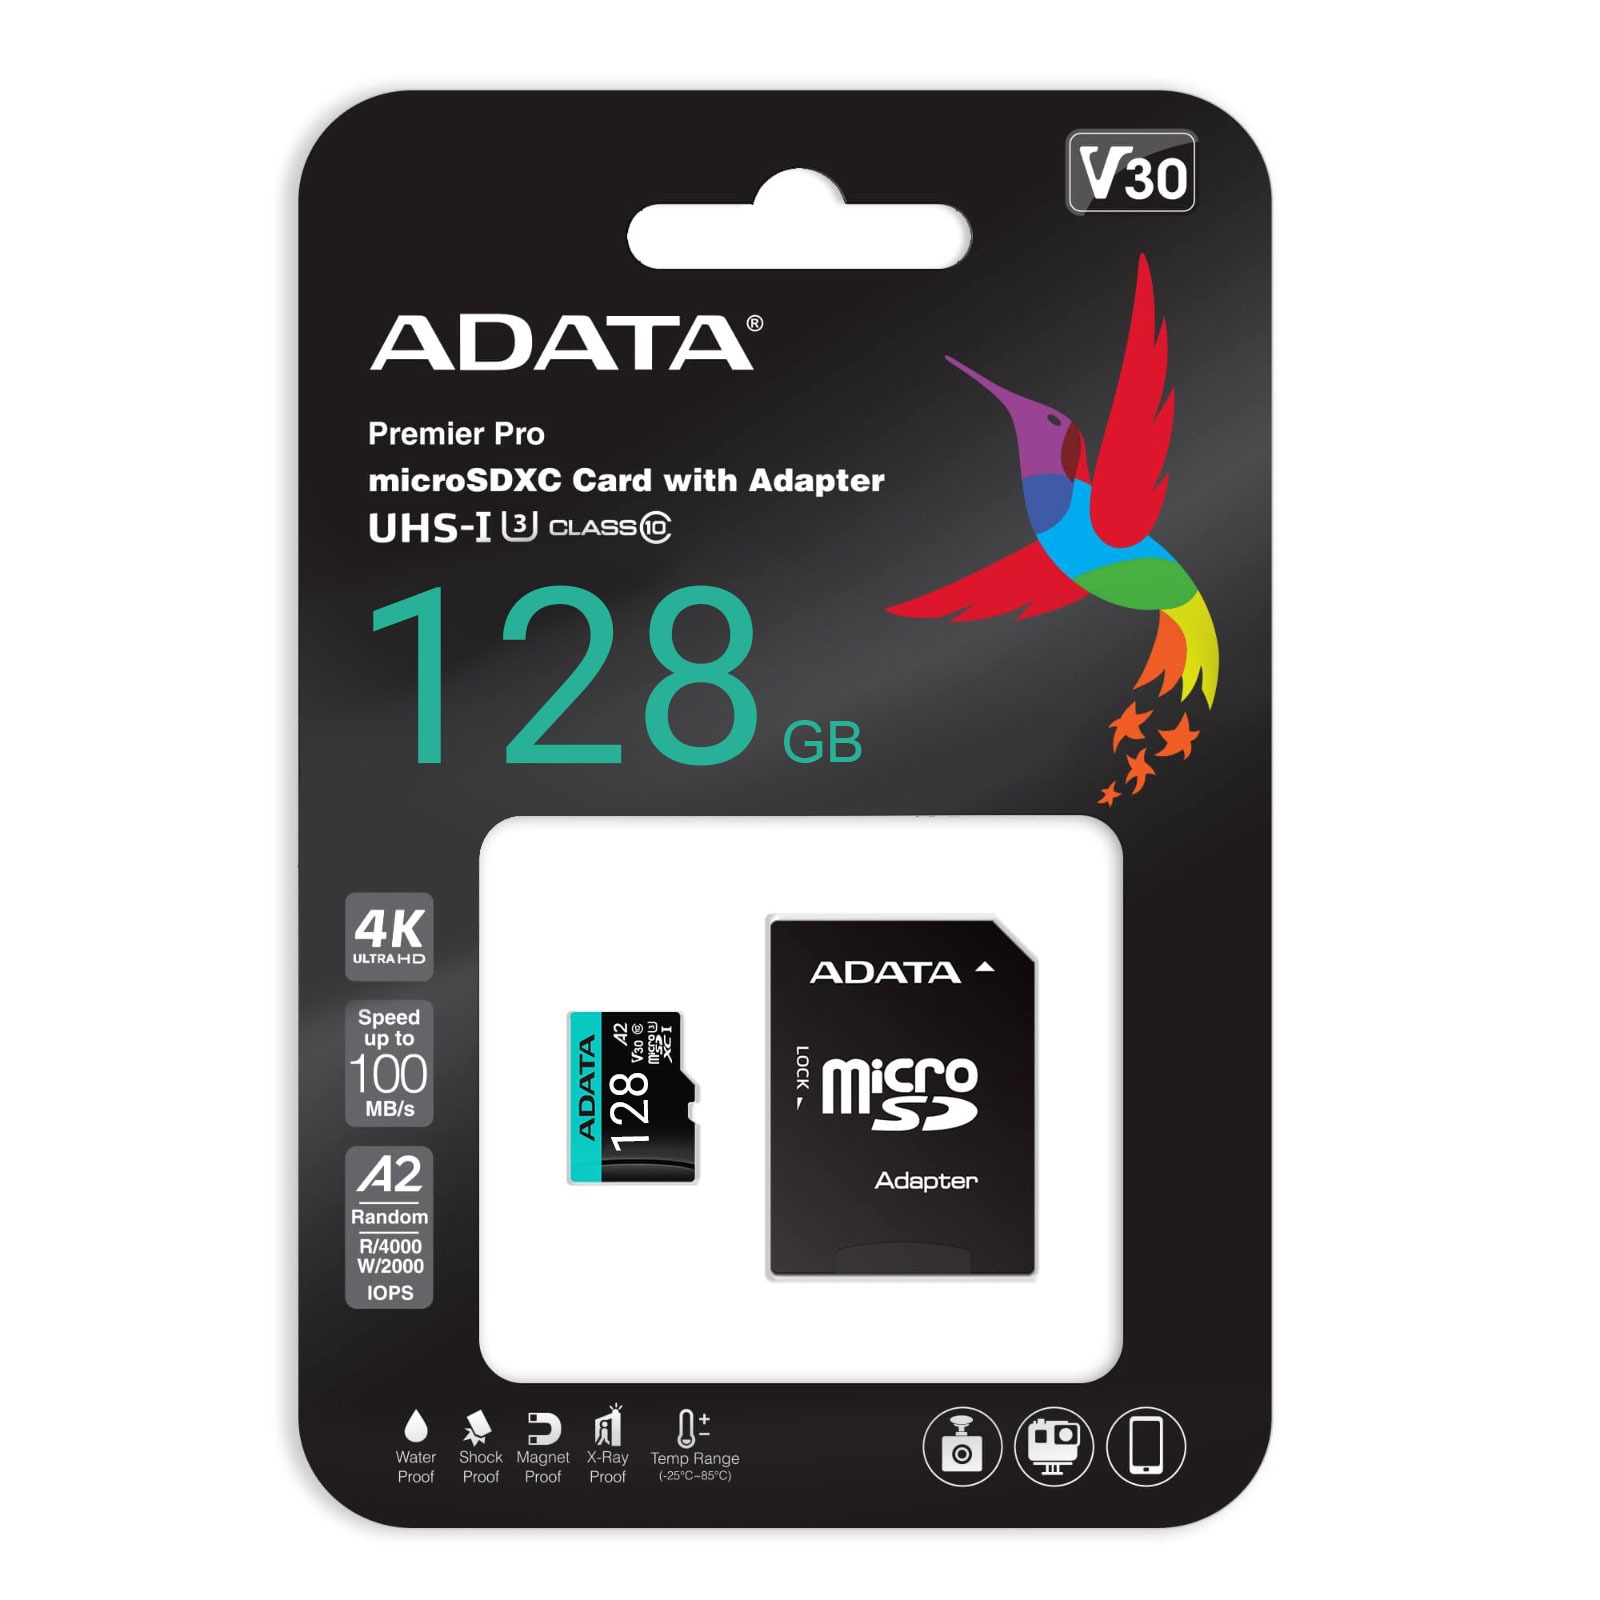 کارت حافظه microSDXC ای دیتا مدل Premier کلاس 10 استاندارد UHS-I U3سرعت 100MBps ظرفیت 128 گیگابایت به همراه آداپتور